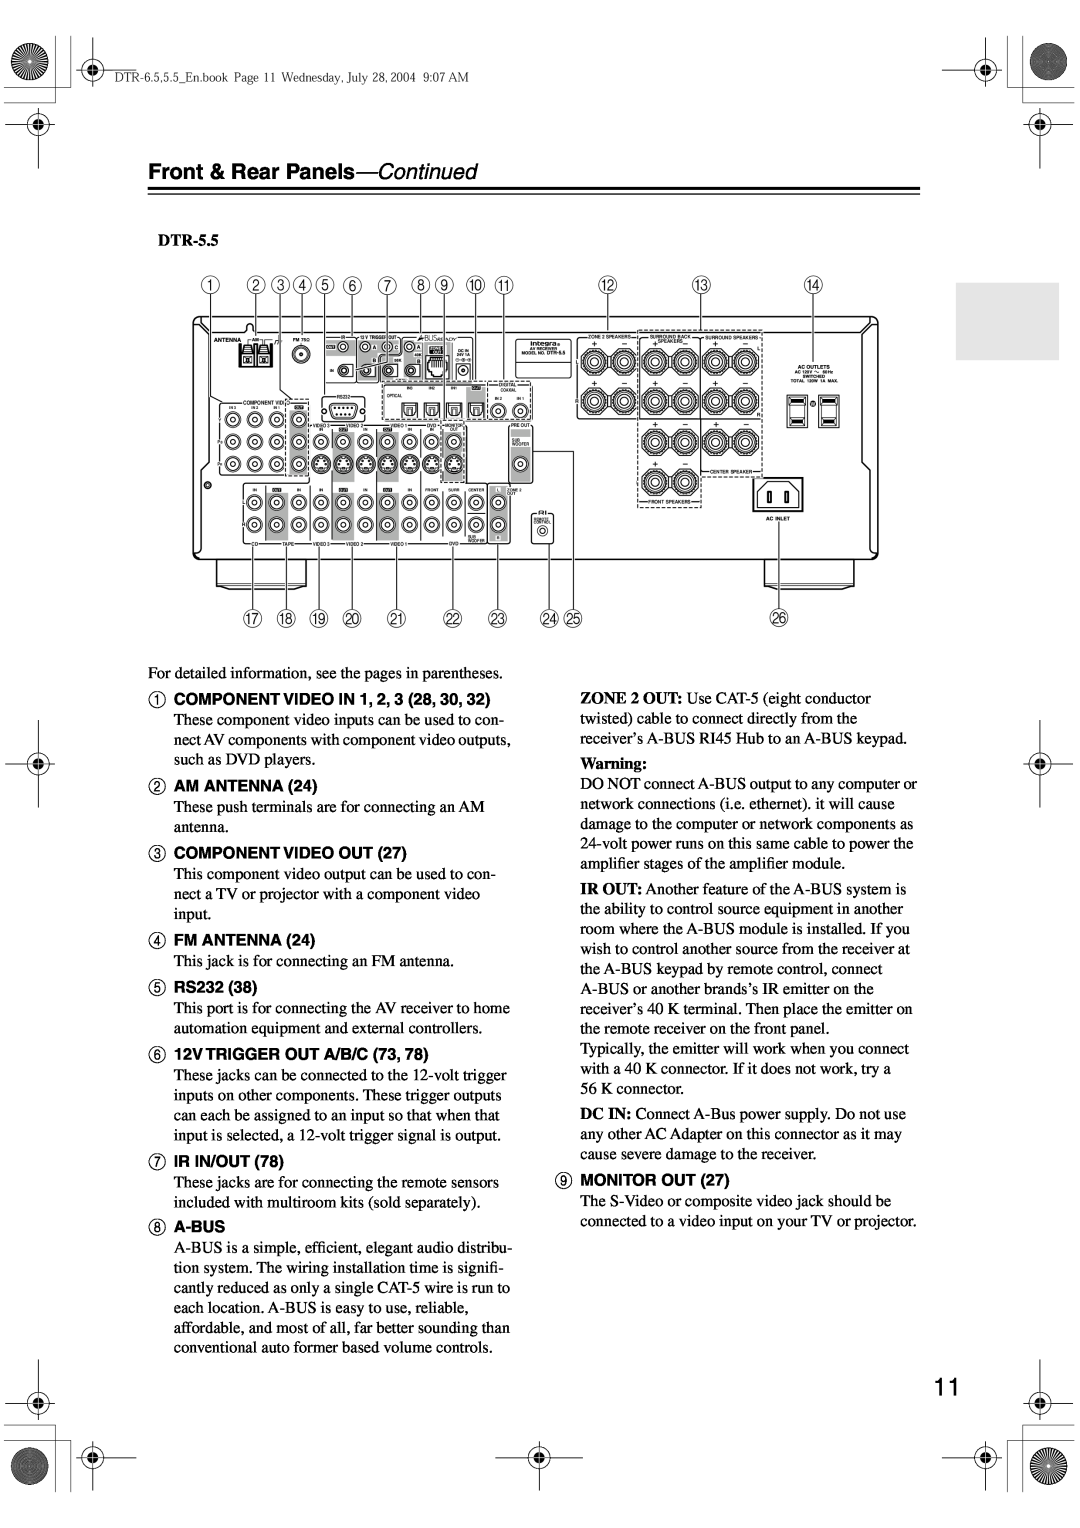 Integra DTR-5.5 instruction manual Front & Rear Panels-Continued, B CDE 6 G H9 J K, Q R S T, U V W 